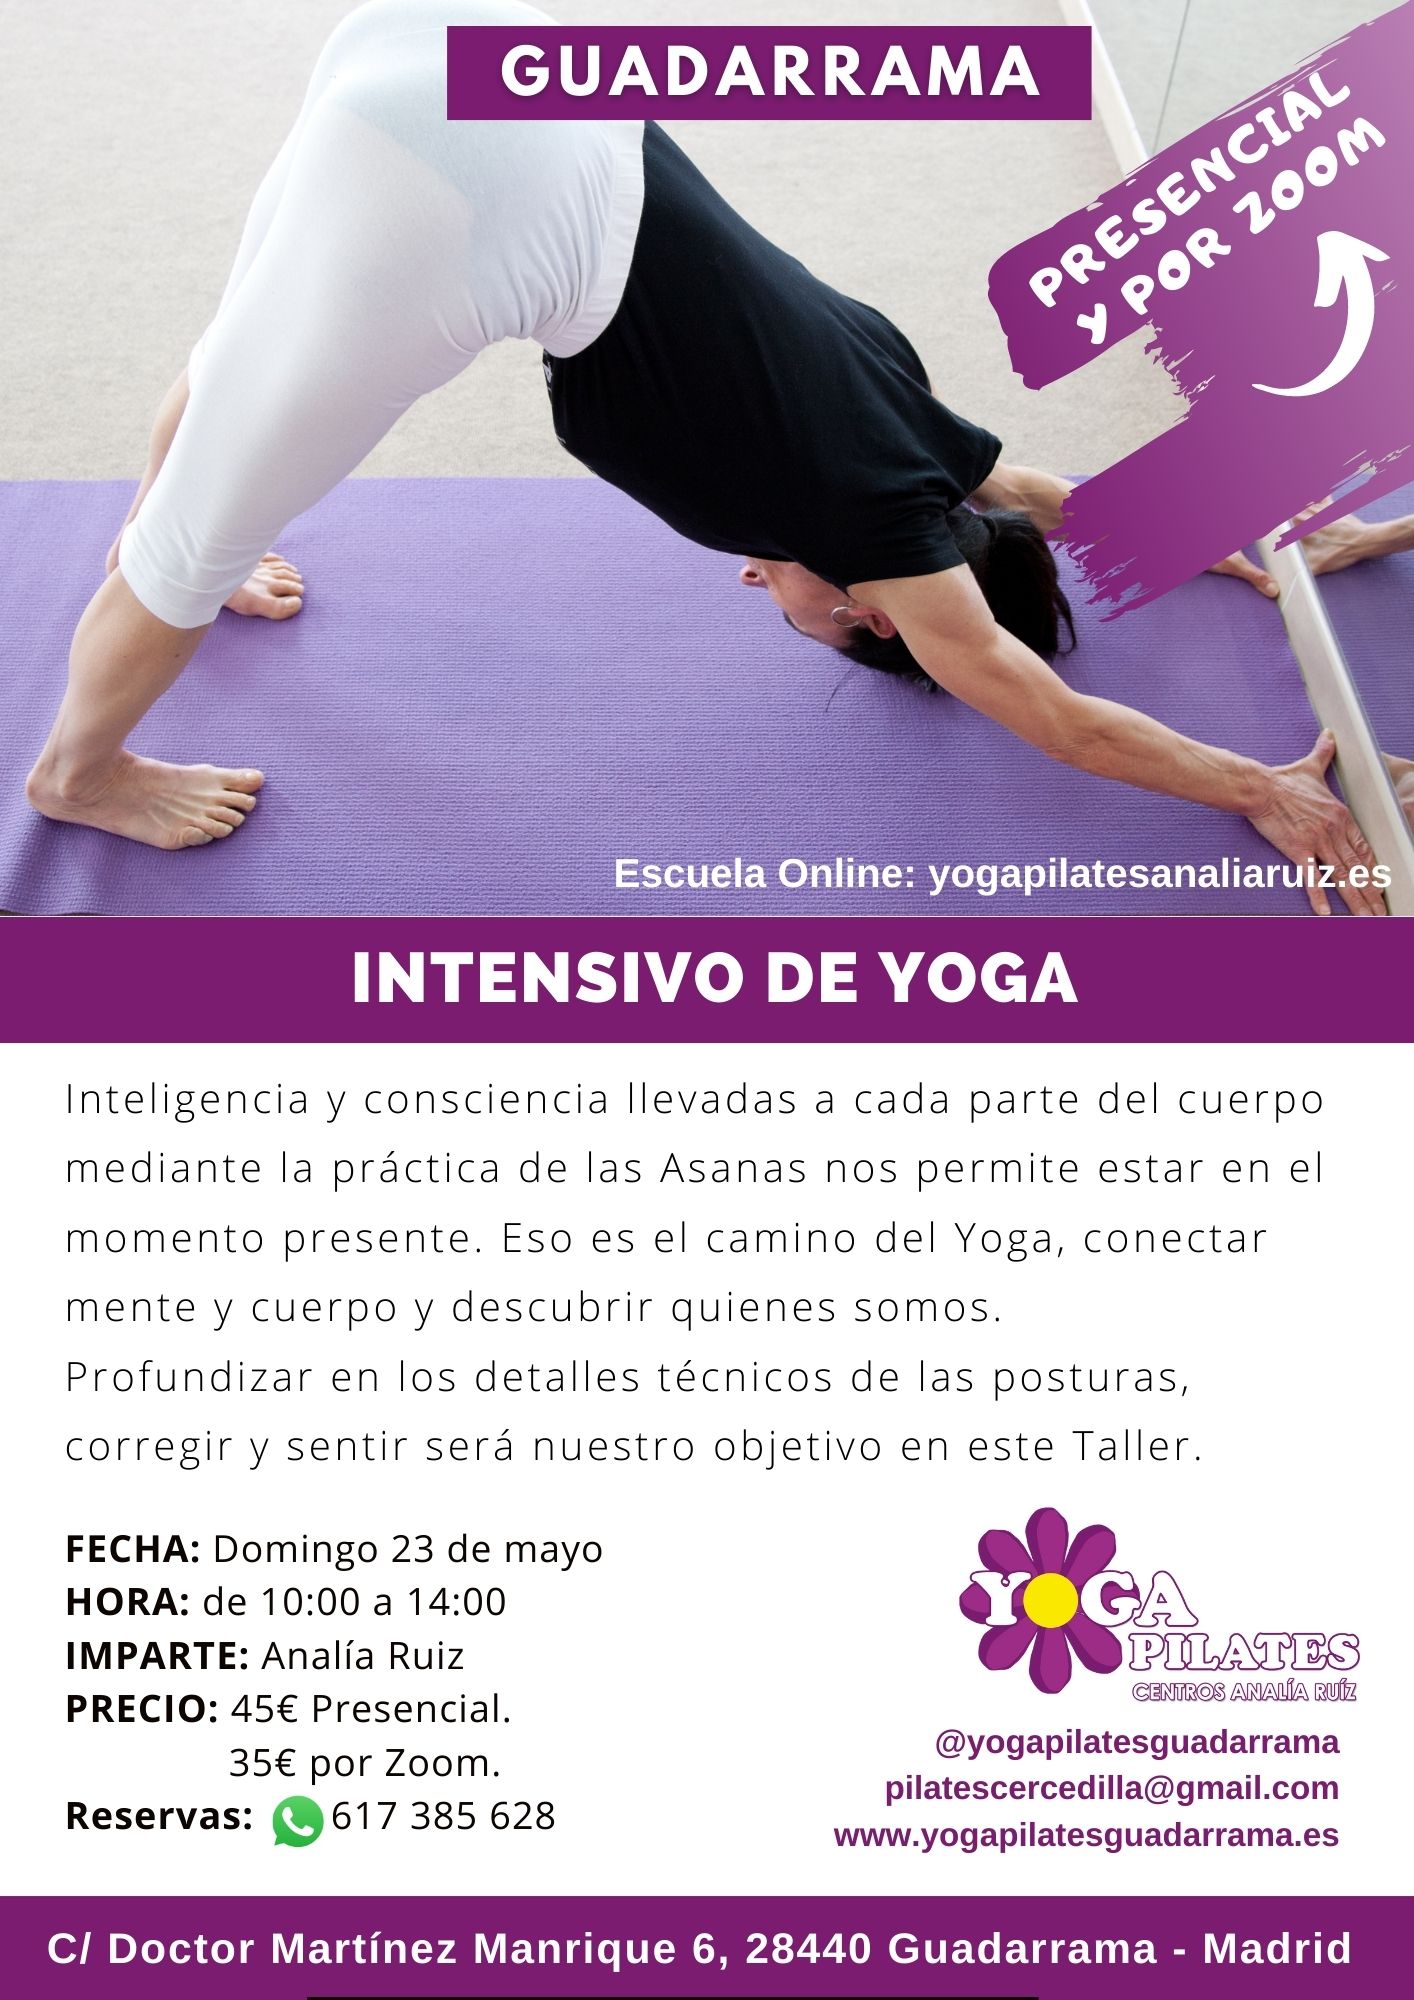 Intensivo de yoga en yoga pilates guadarrama